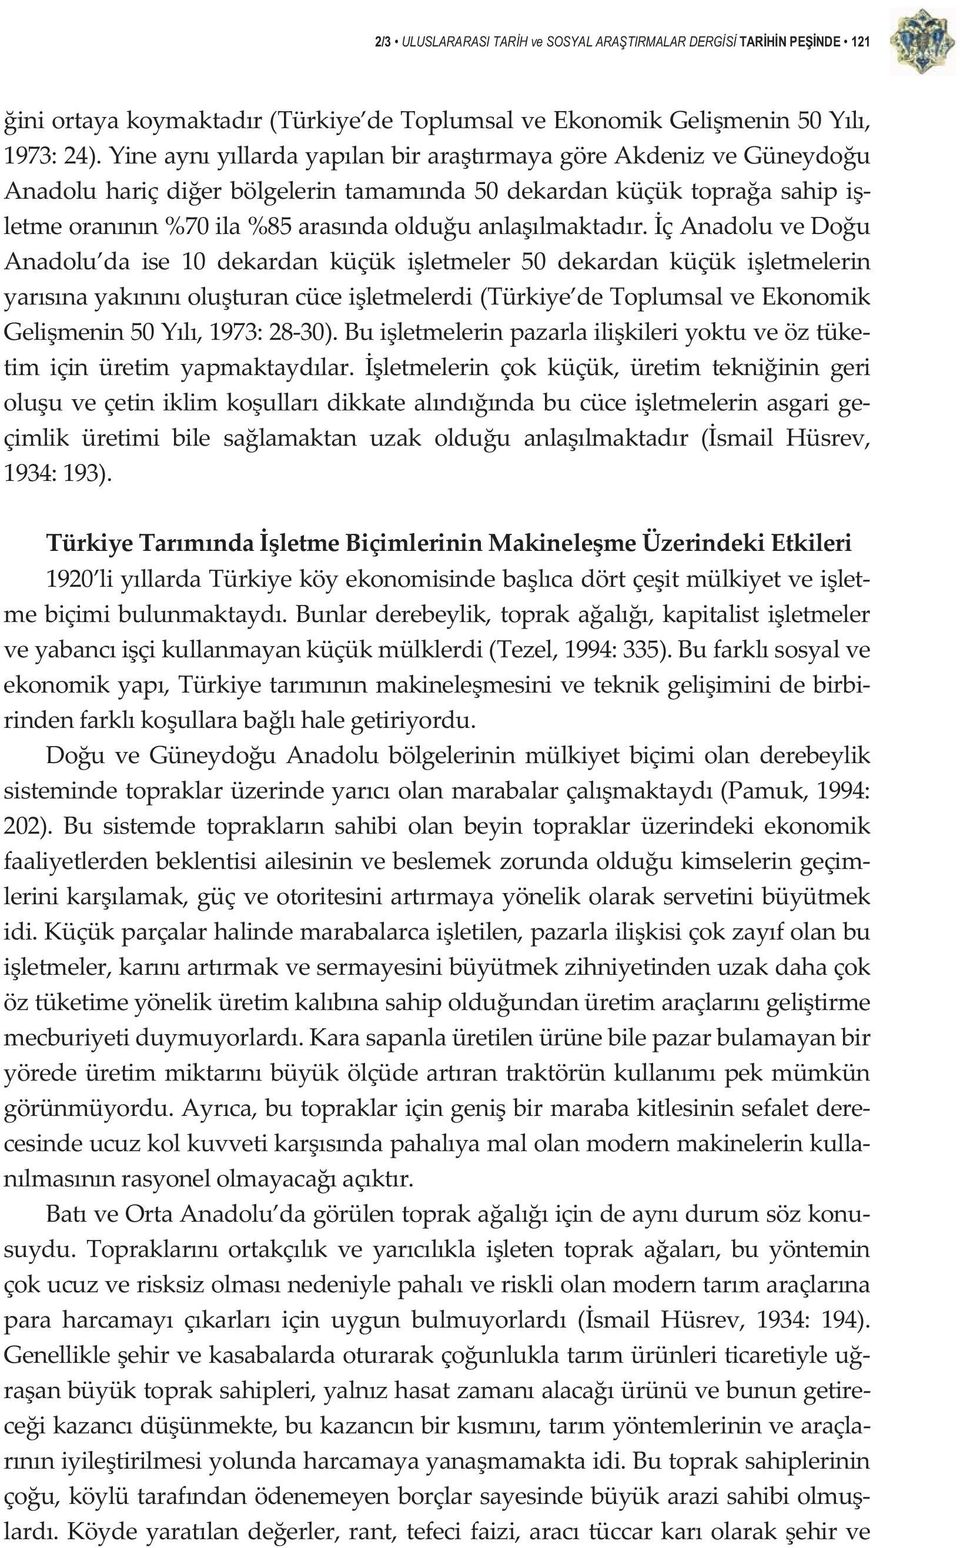 çanadoluvedou Anadolu da ise 10 dekardan küçük iletmeler 50 dekardan küçük iletmelerin yarsnayaknnoluturancüceiletmelerdi(türkiye detoplumsalveekonomik Gelimenin50Yl,1973:2830).